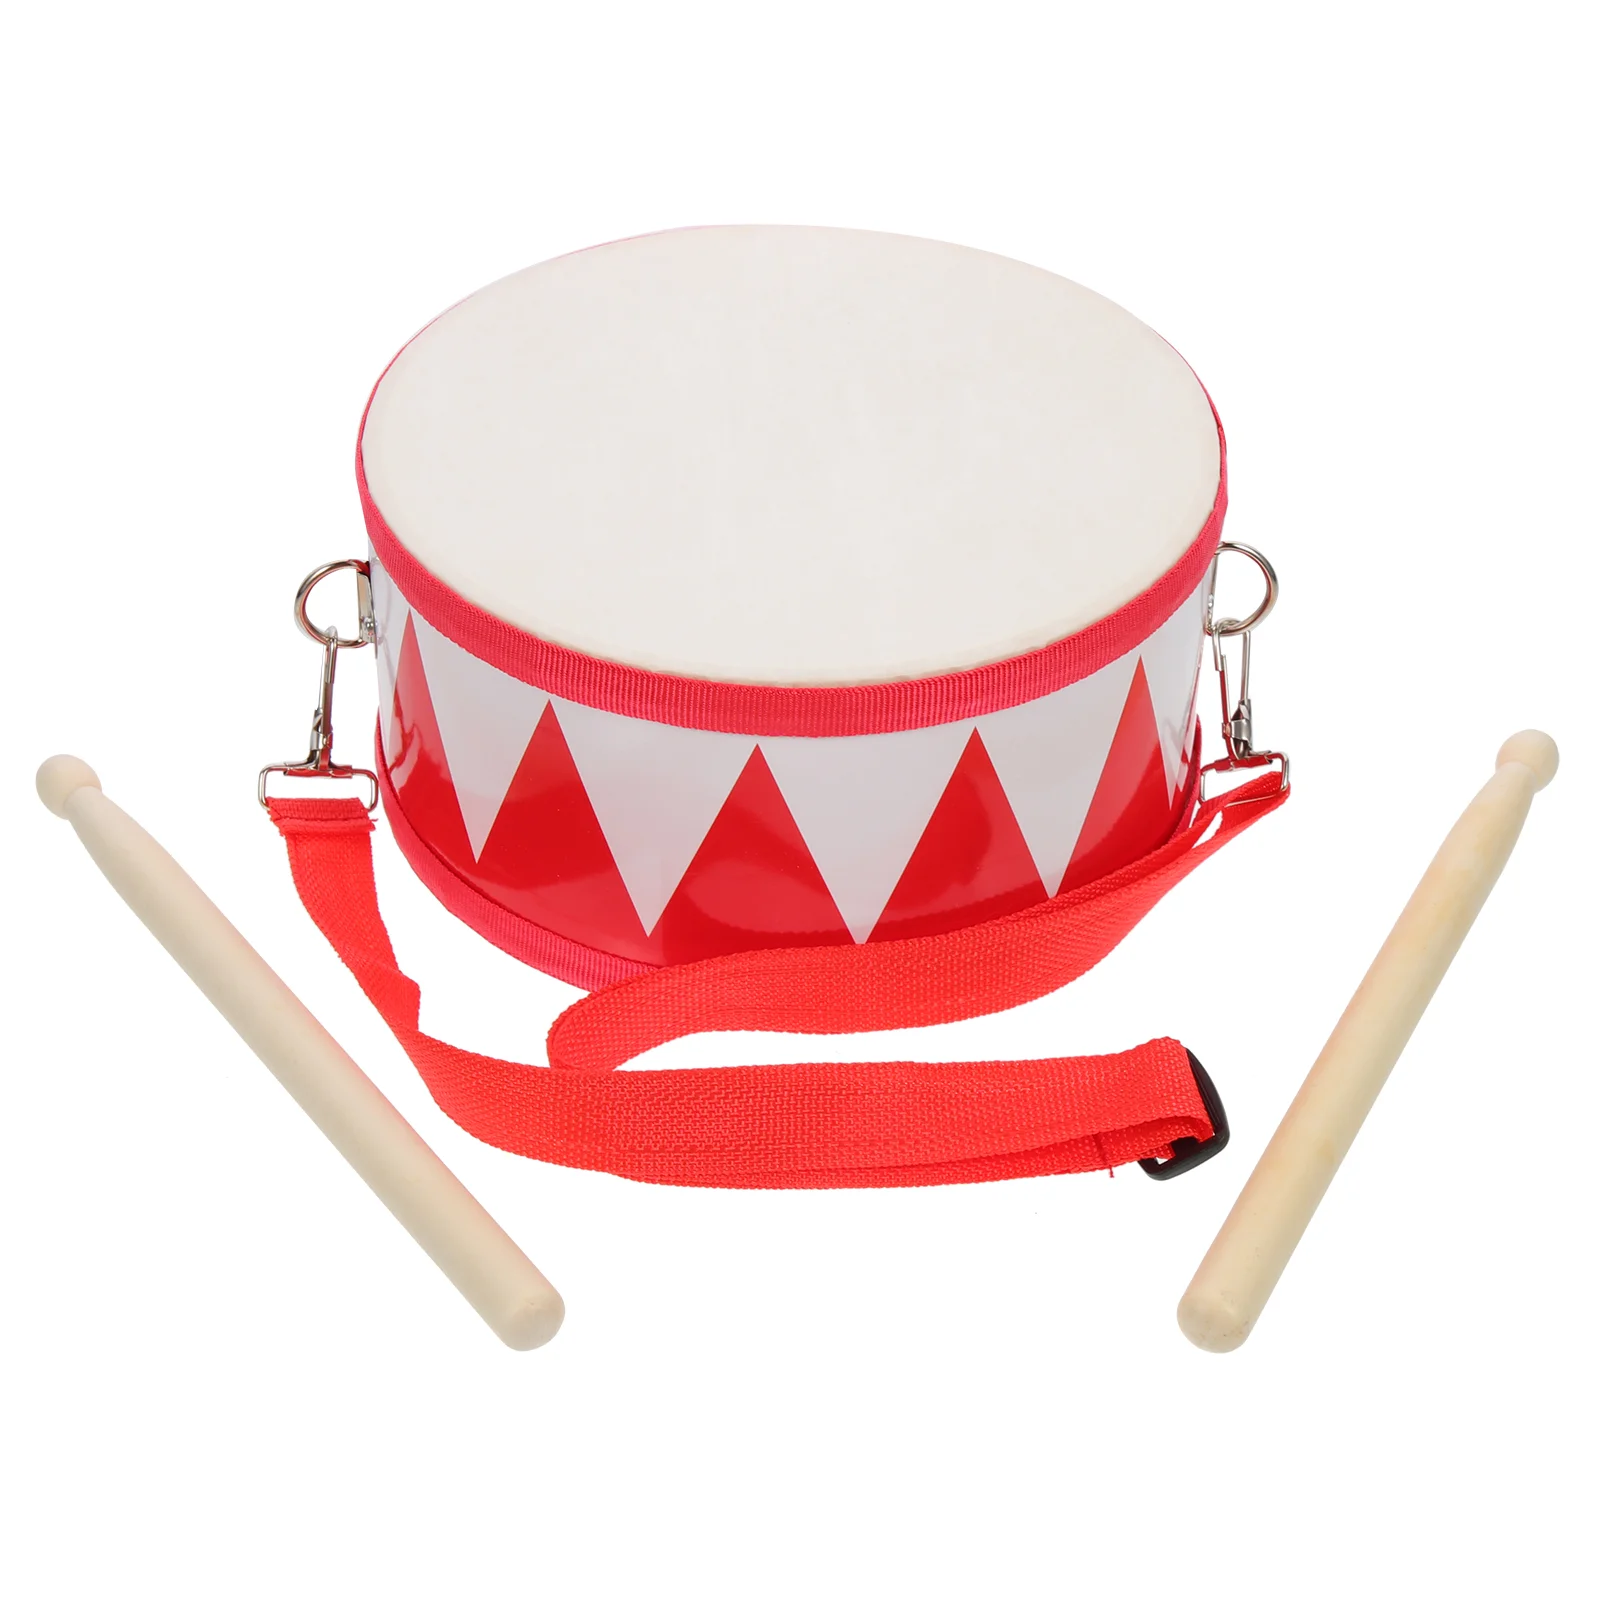 

Барабан Змеиный детский ударный игрушечный ударный барабан игрушки для малышей детский ручной деревянный набор 11 дюймов Музыкальный детск...